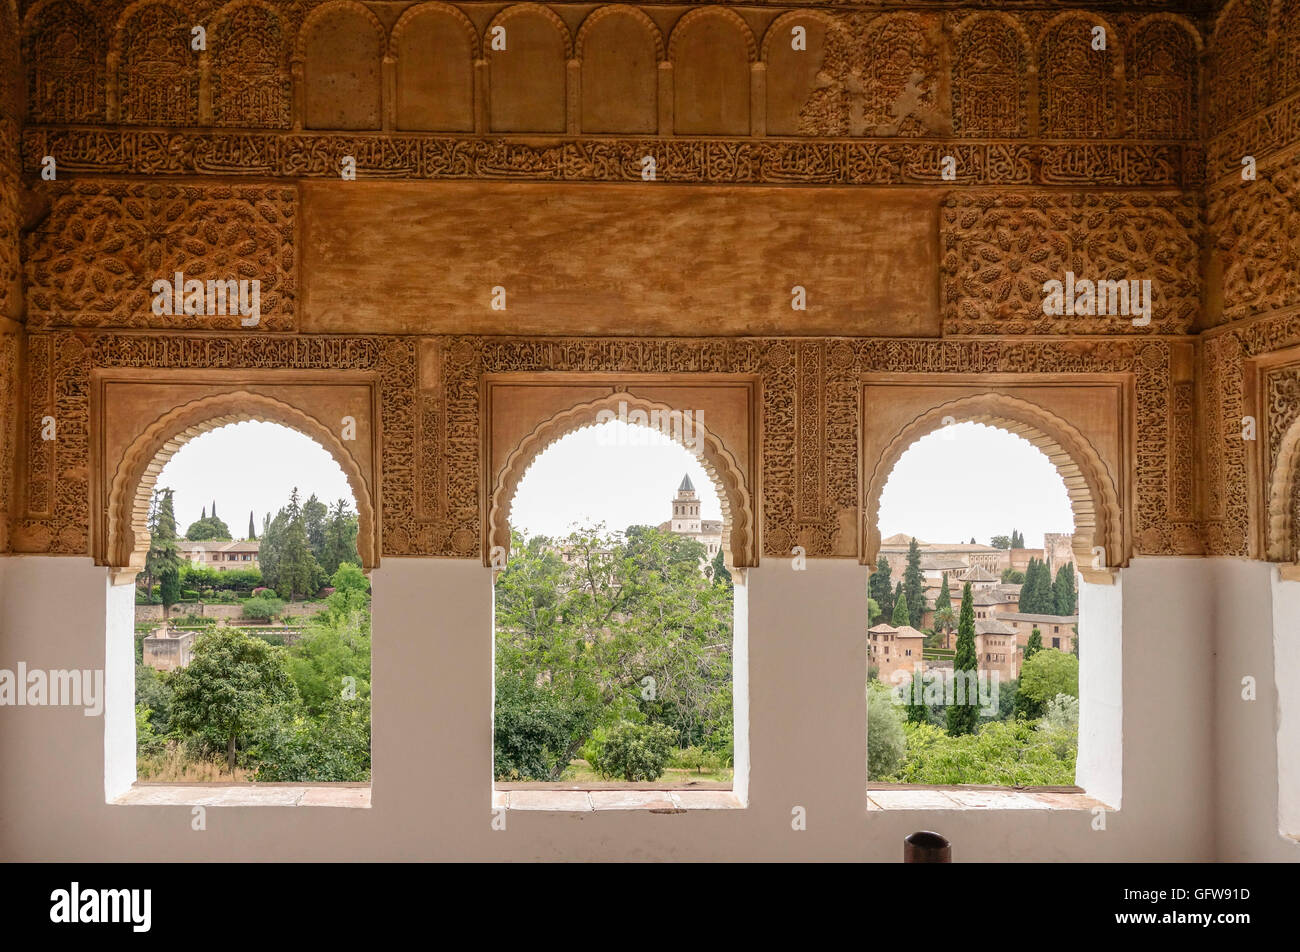 Maurische verzierte Fenstern, Palacio de Generalife, Alhambra, Sommer Palast der Nasriden Emire, Könige, Granada, Andalusien, Spanien. Stockfoto